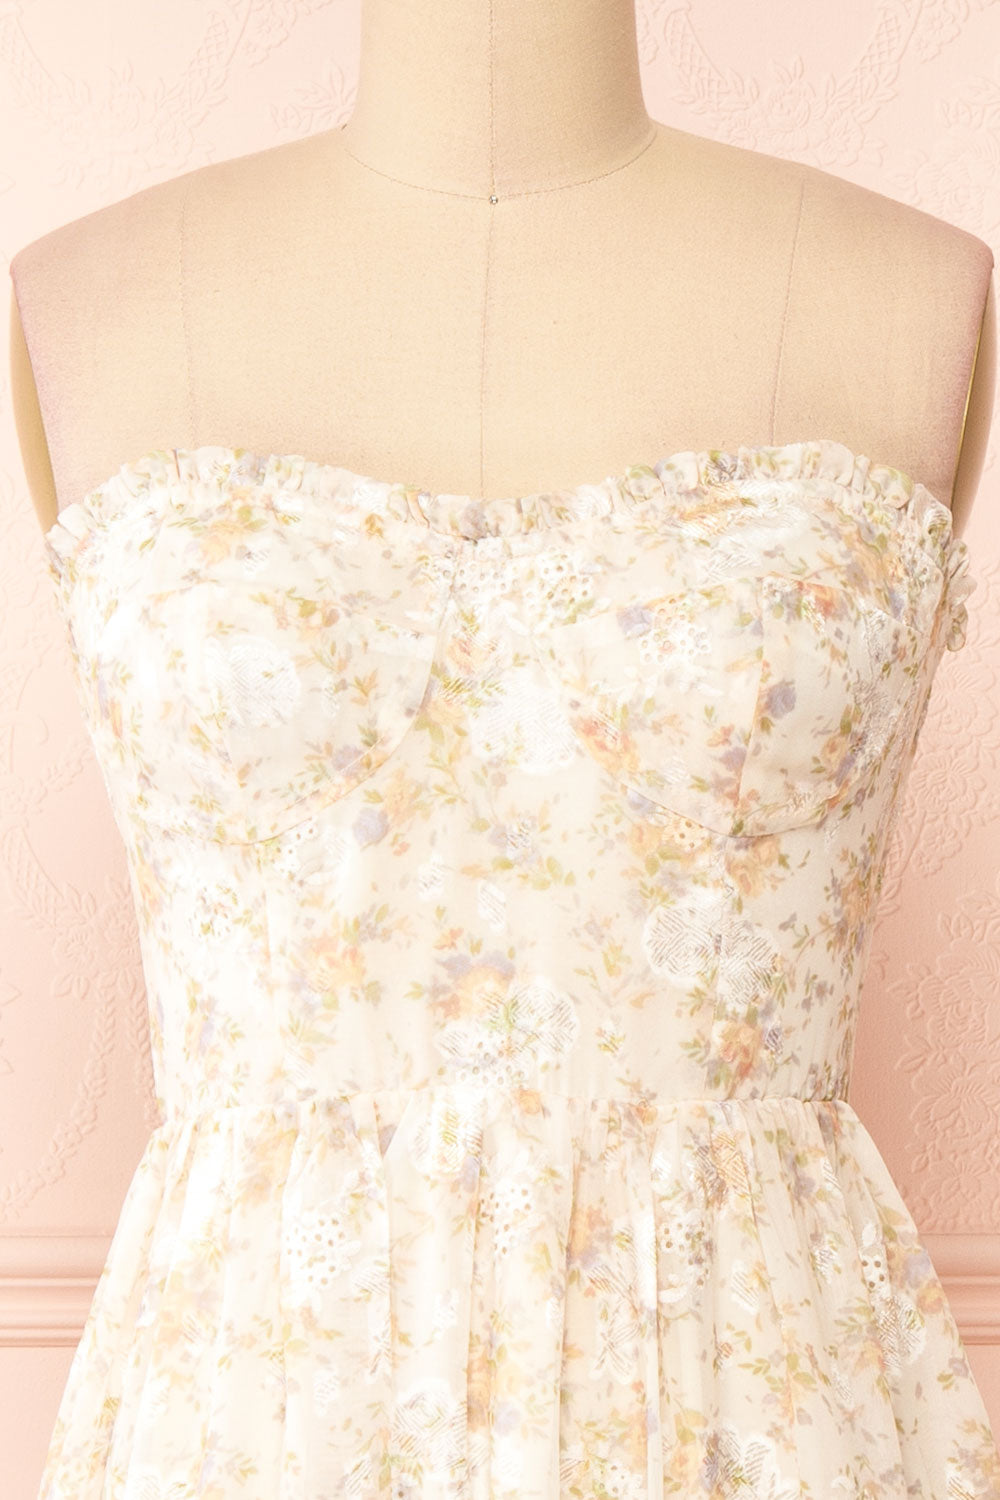  Azin Bustier Floral Midi Dress | Boutique 1861 no straps